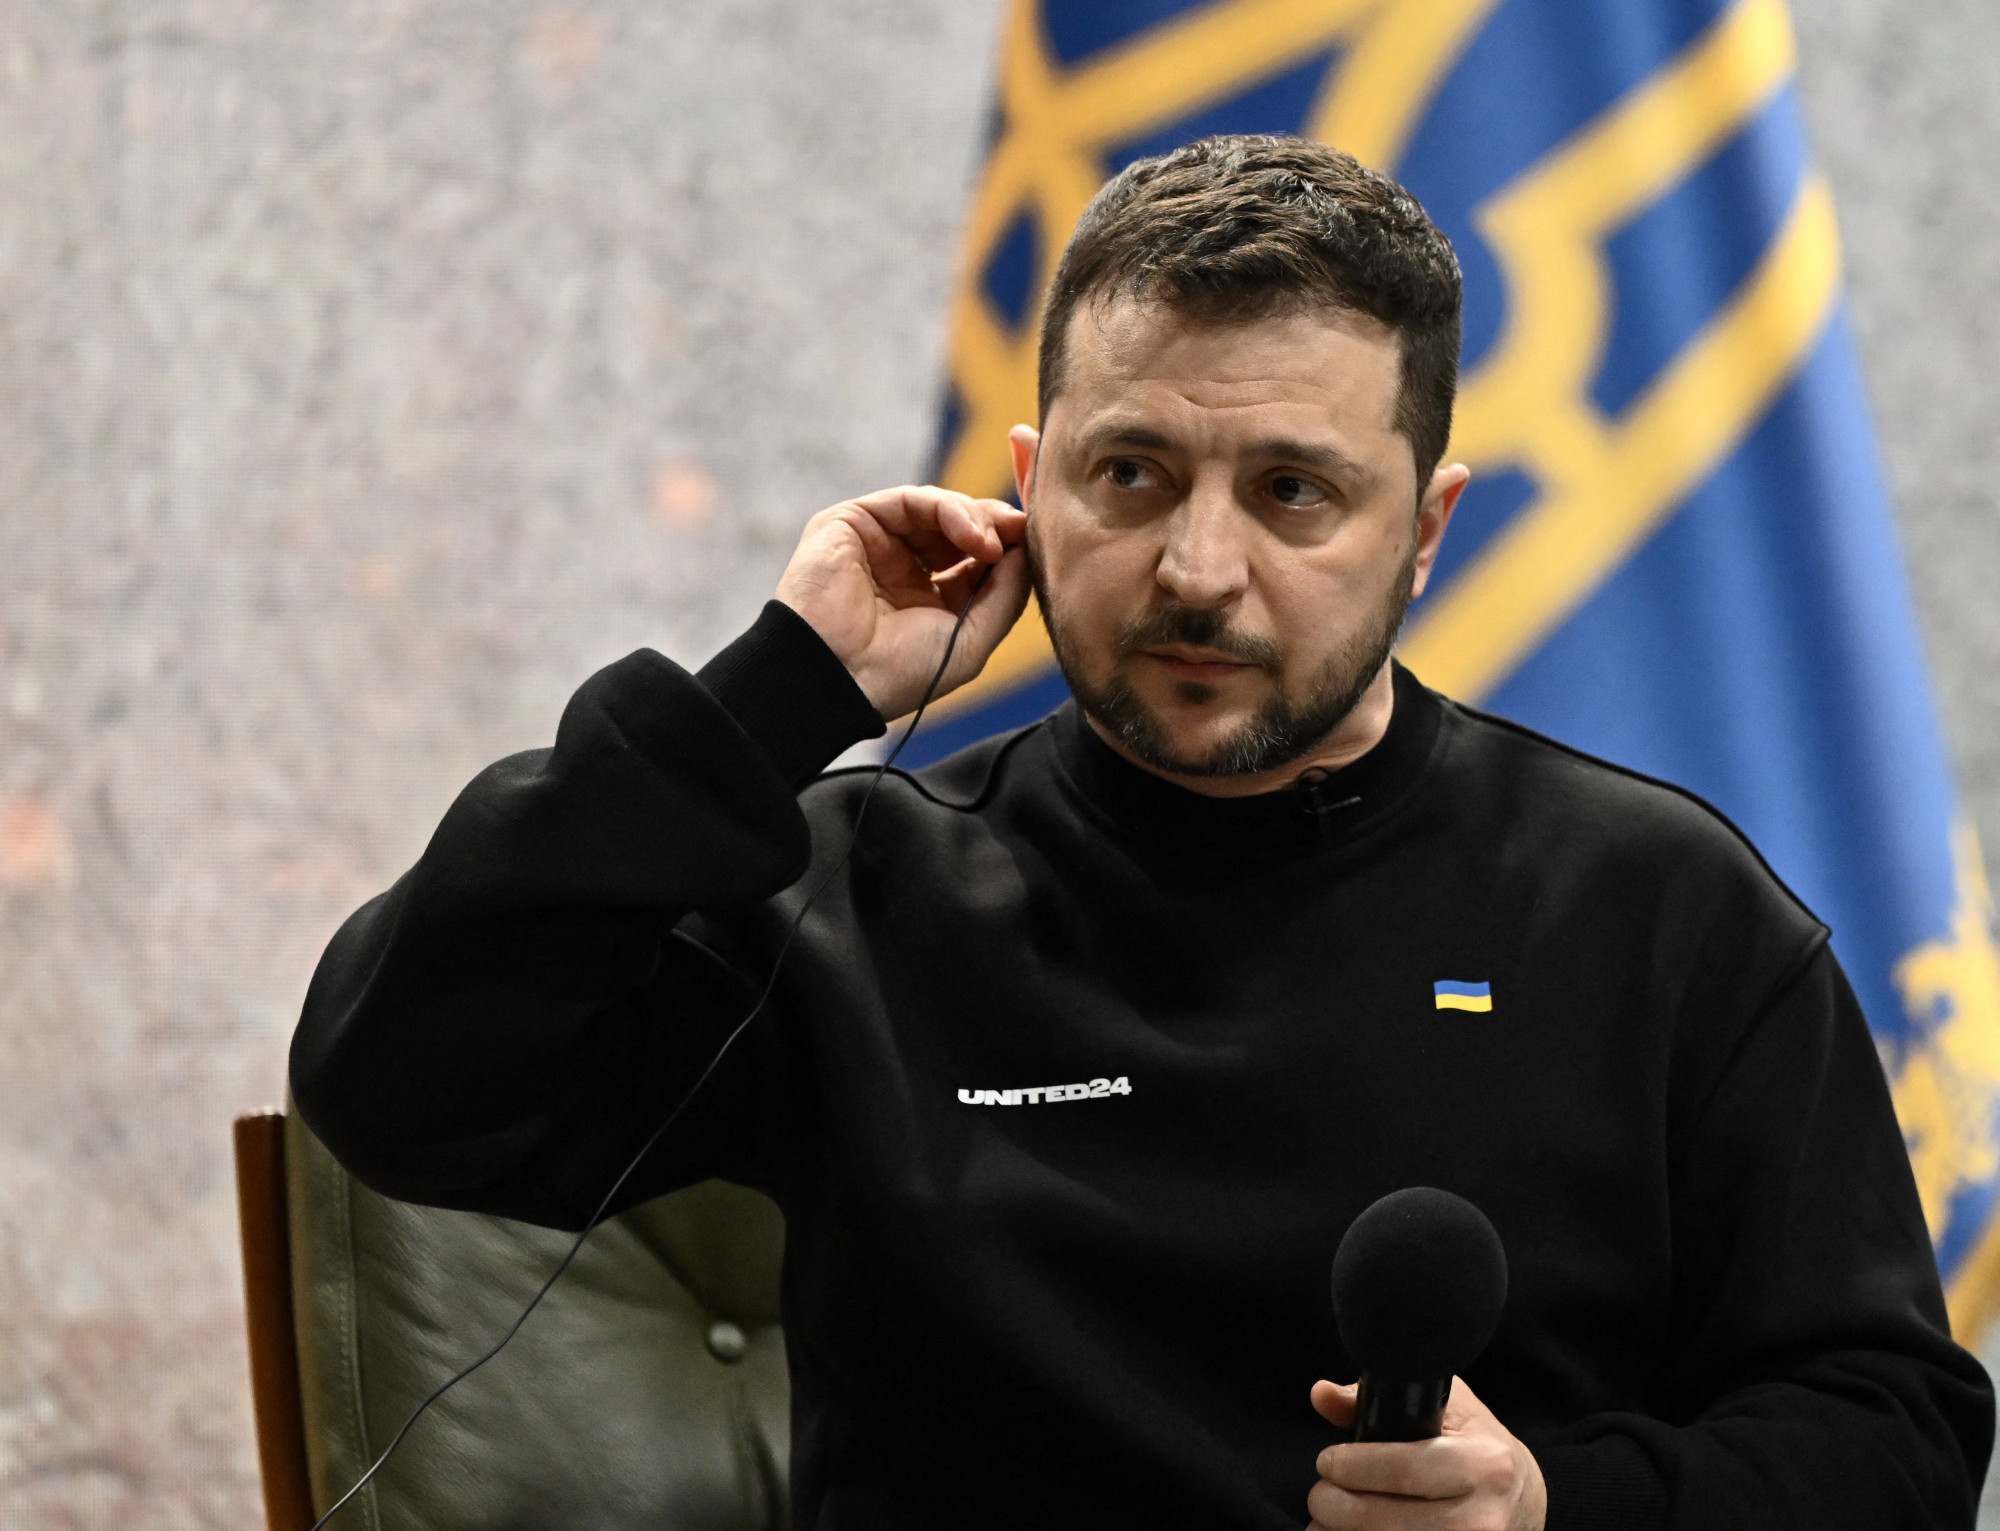 Rácz András: Az, hogy a Barátság-vezeték még működik, azt mutatja, hogy az ukrán vezetésnek nem ment el az esze